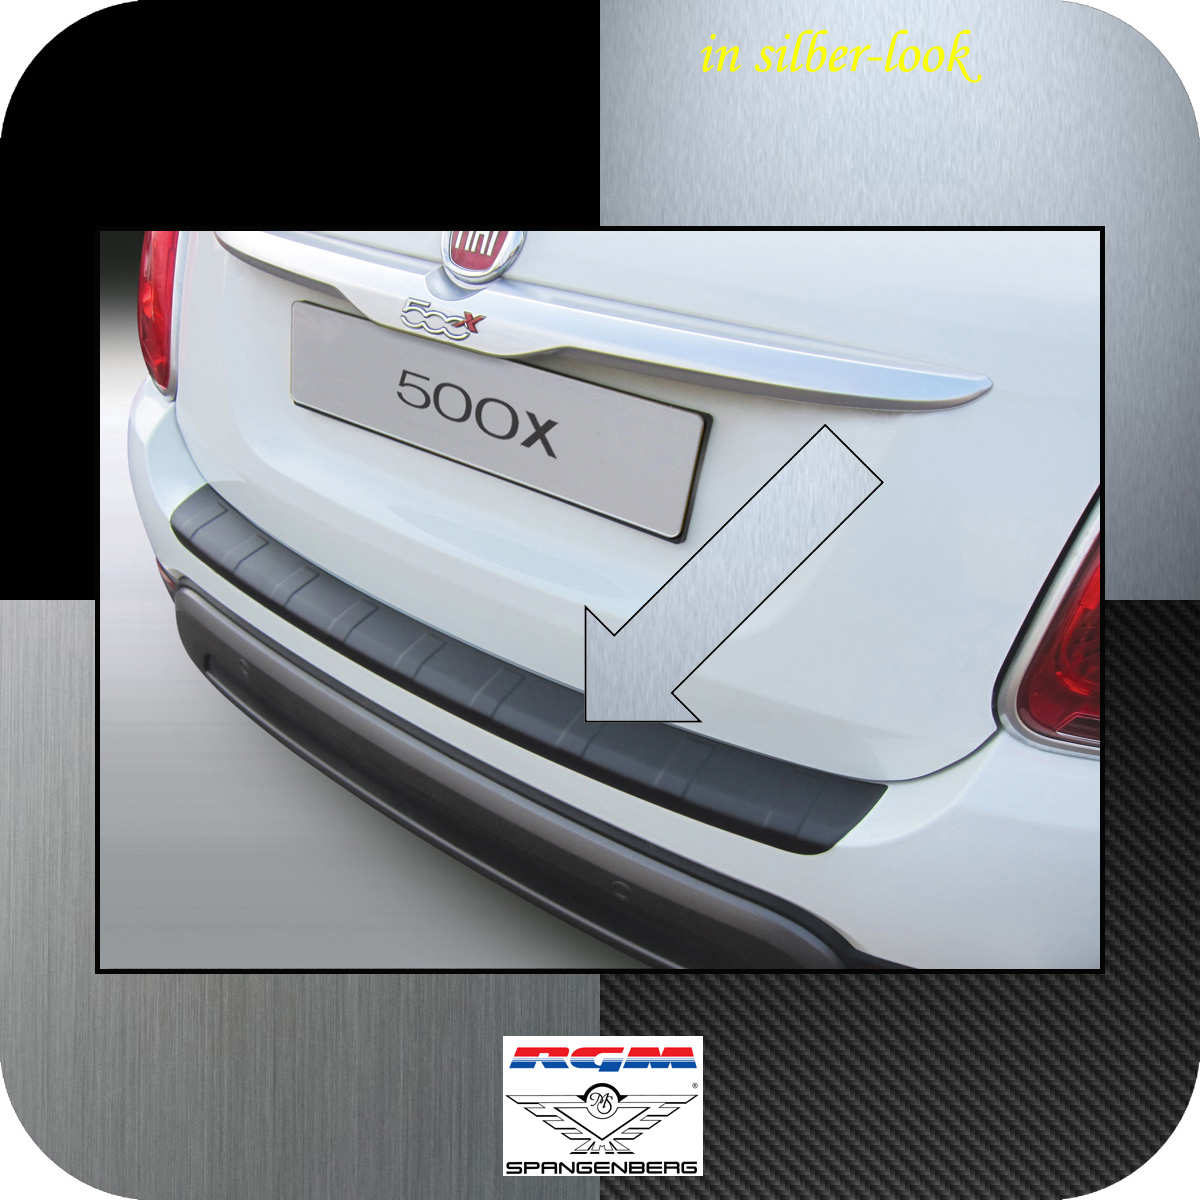 Ladekantenschutz Silber-Look gerippt Fiat 500X Baujahre 2014-2018 3506997